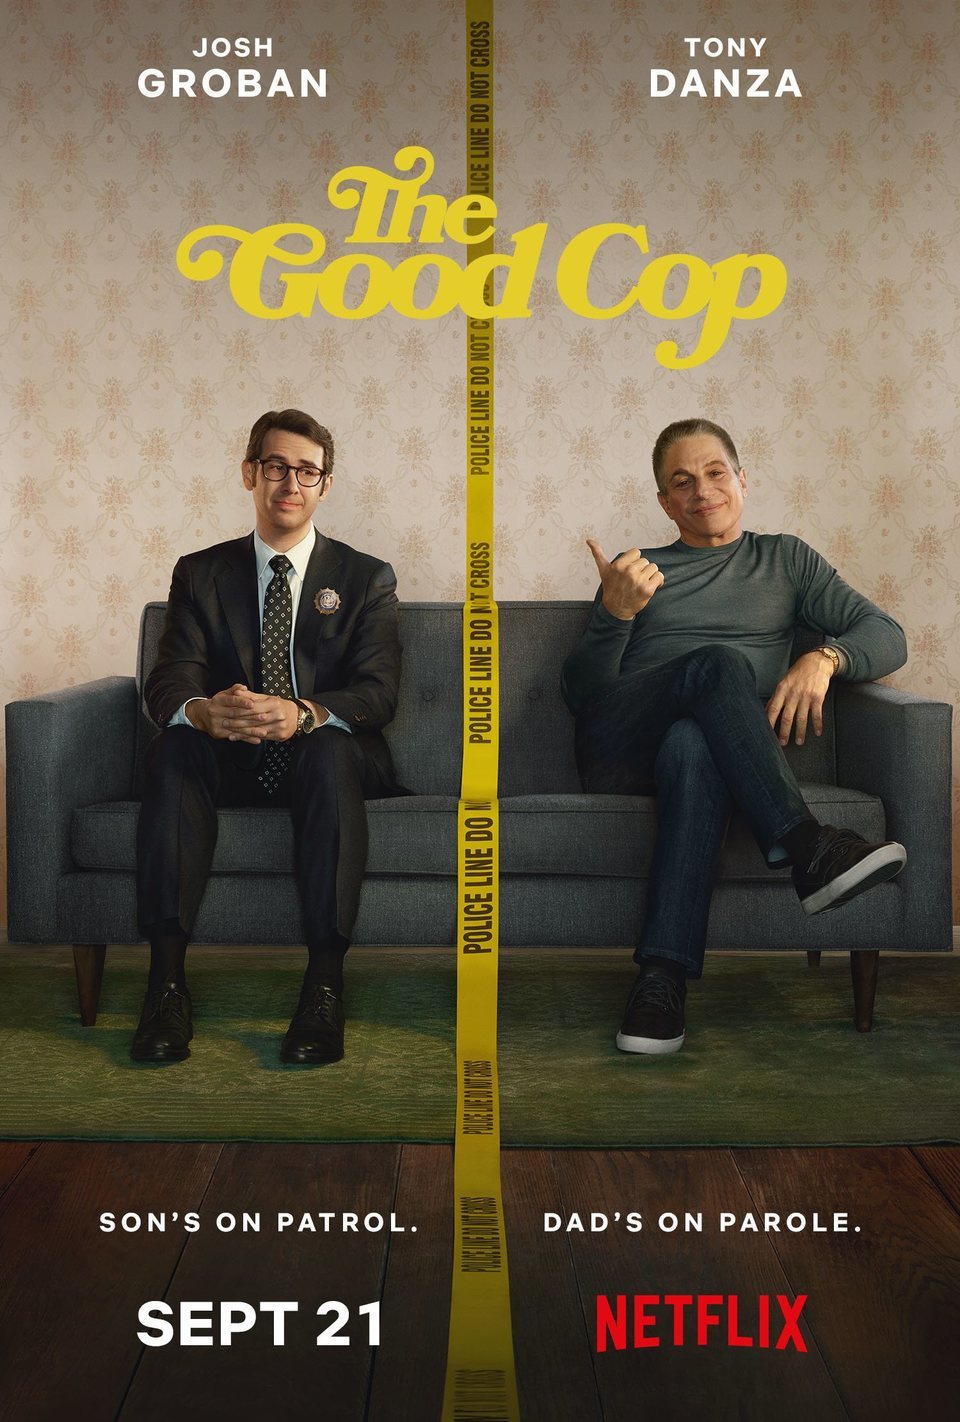 Cartel de The Good Cop - Póster 'The Good Cop'